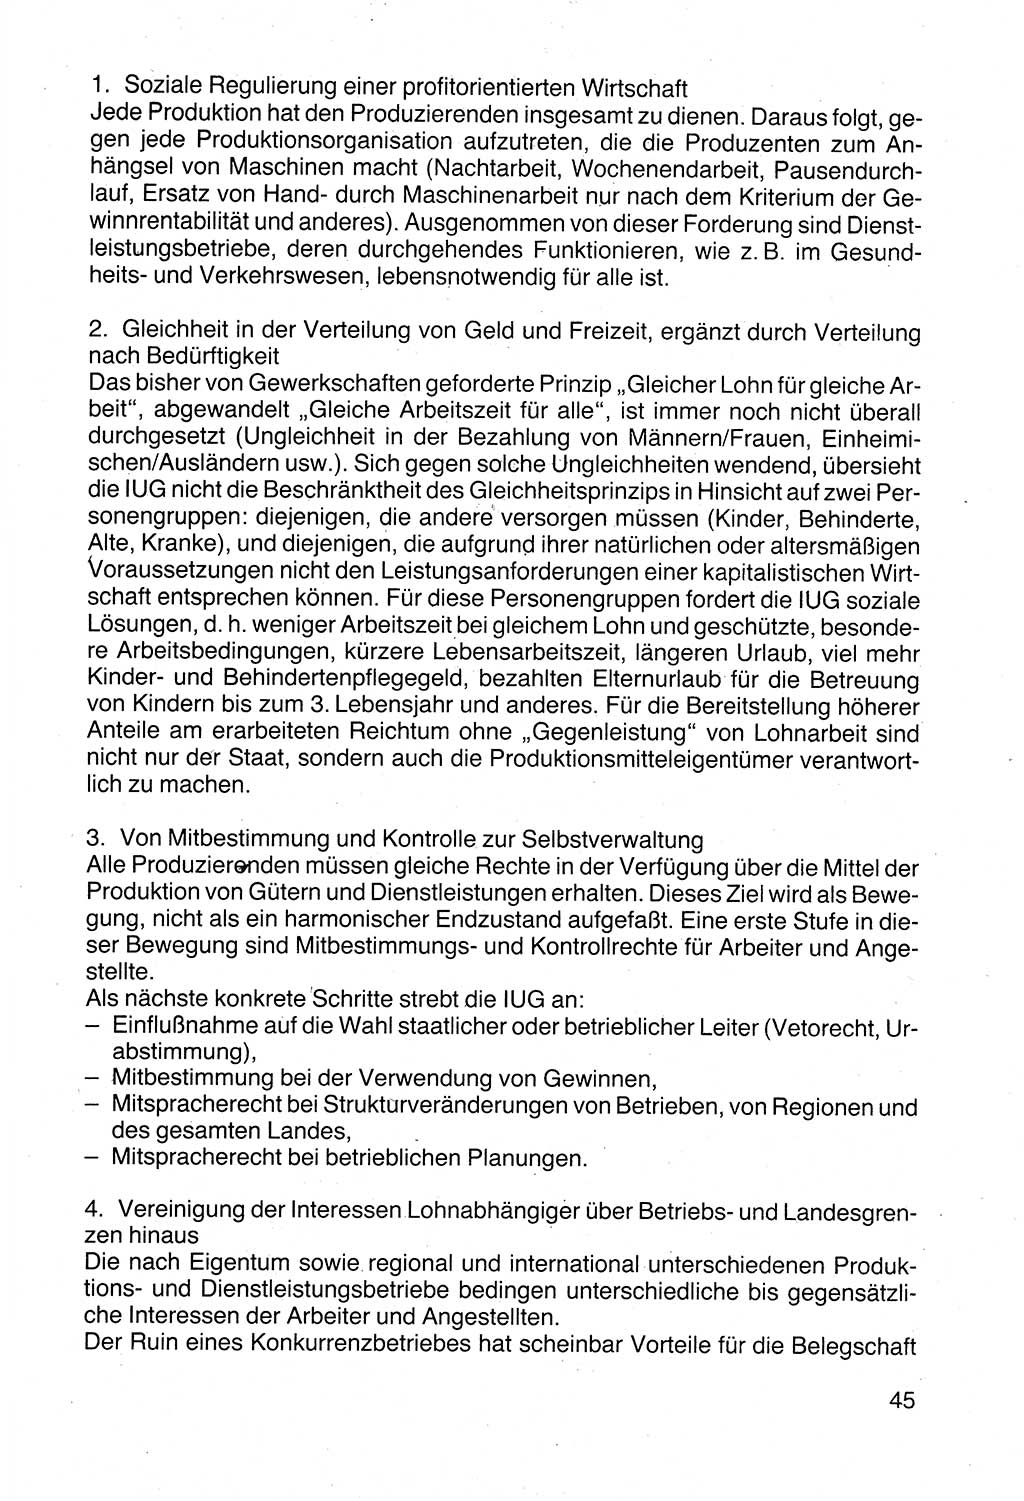 Politische Parteien und Bewegungen der DDR (Deutsche Demokratische Republik) über sich selbst 1990, Seite 45 (Pol. Part. Bew. DDR 1990, S. 45)